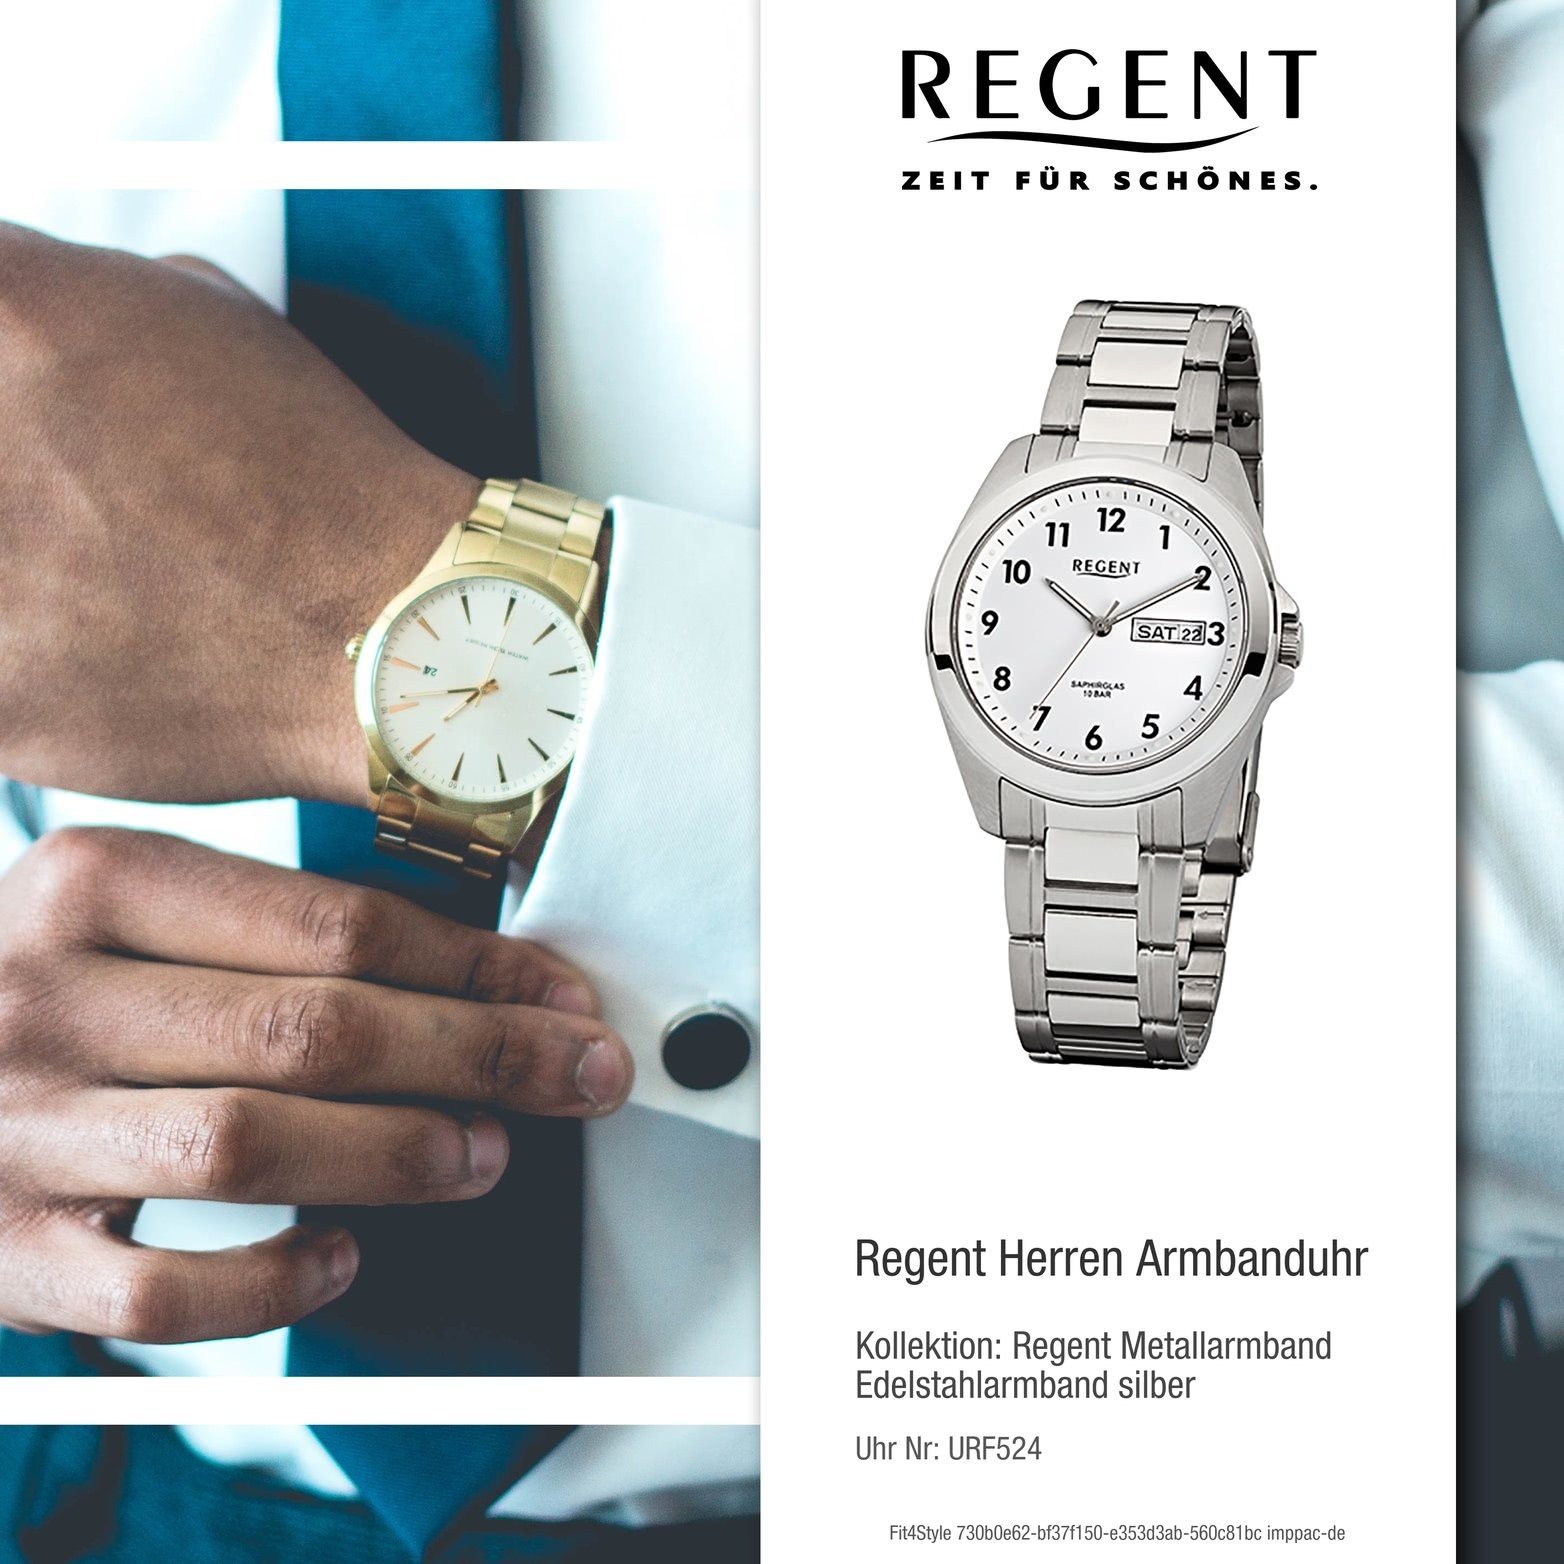 Regent Herren Quarzuhr, Stahl weiß, Herrenuhr Uhr Quarzuhr Gehäuse, rundes (38mm) F-524 Edelstahlarmband Regent silber, mittel